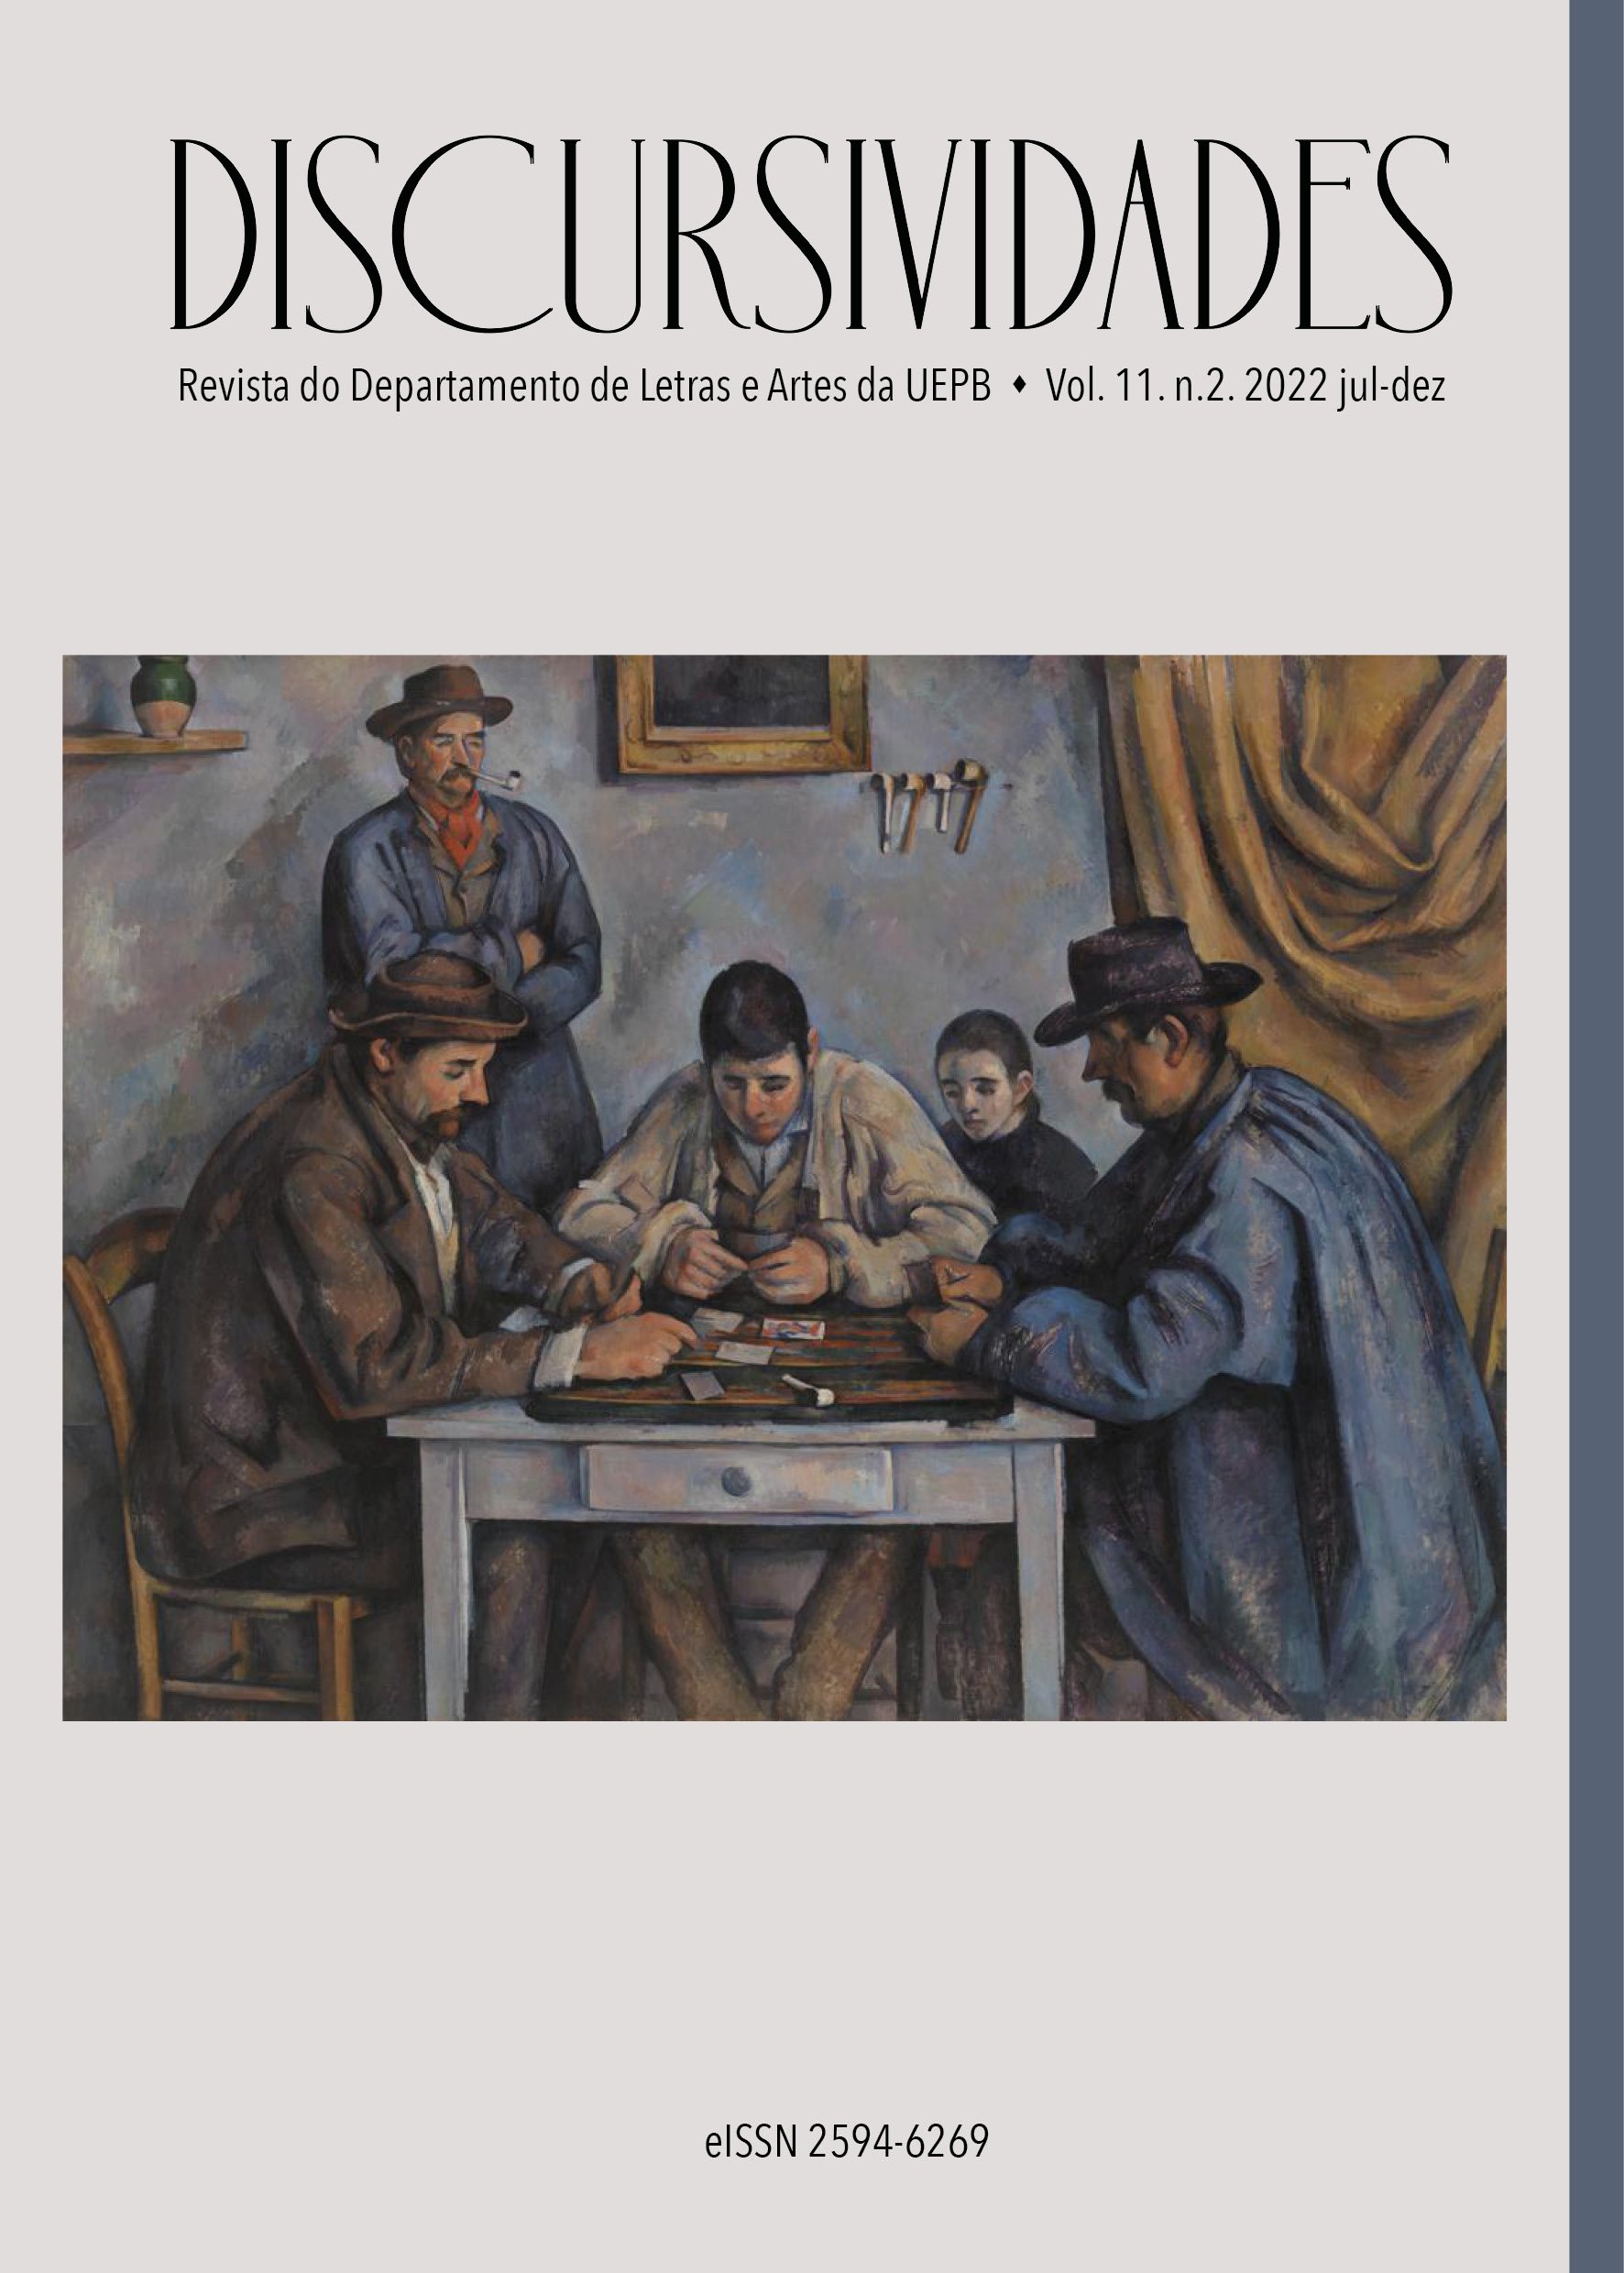 Reprodução da obra “The card players”  (1892) de Paul Cézanne